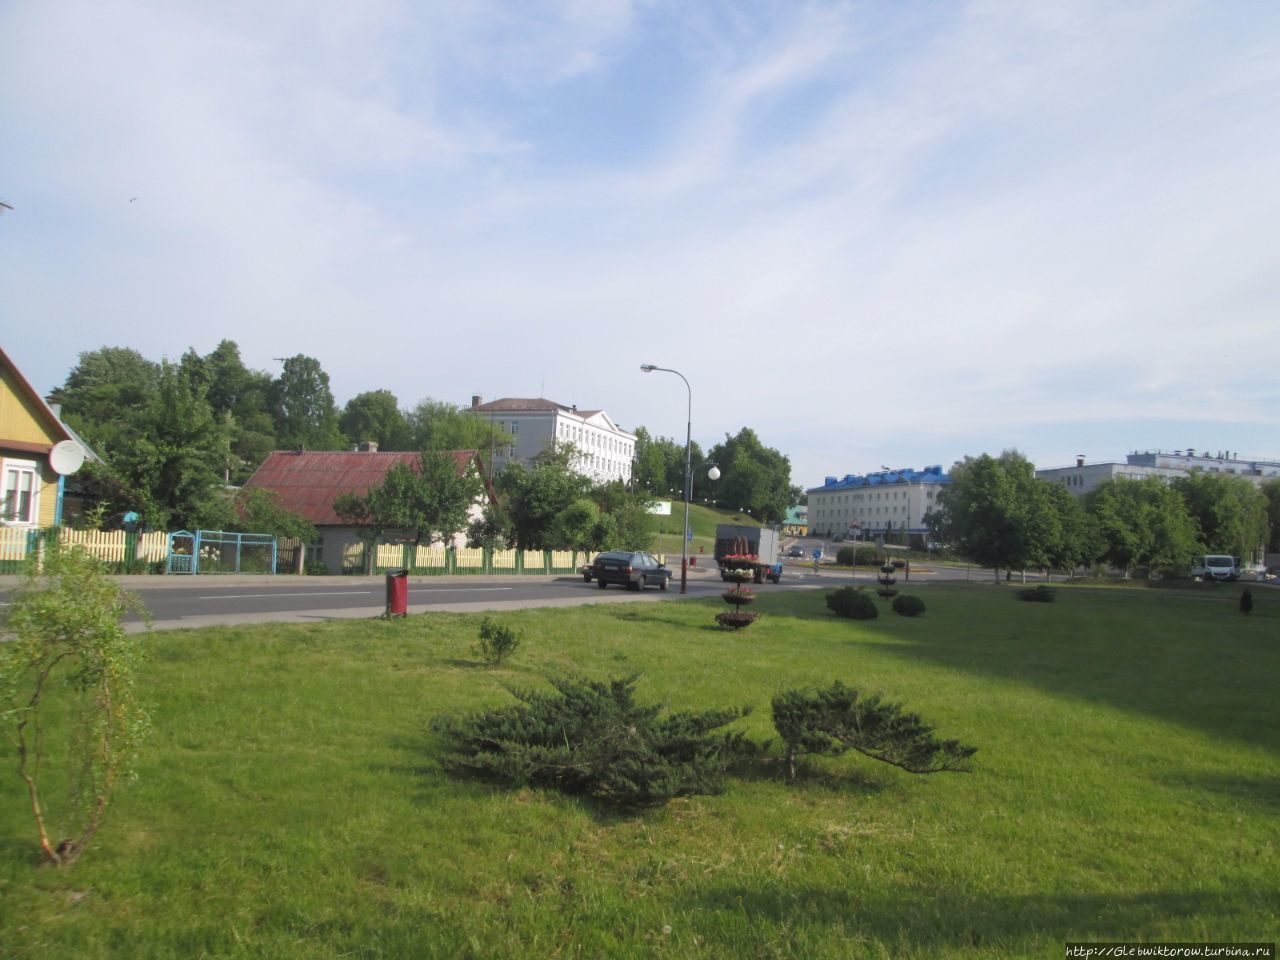 Прогулка по скверам и паркам Волковыск, Беларусь